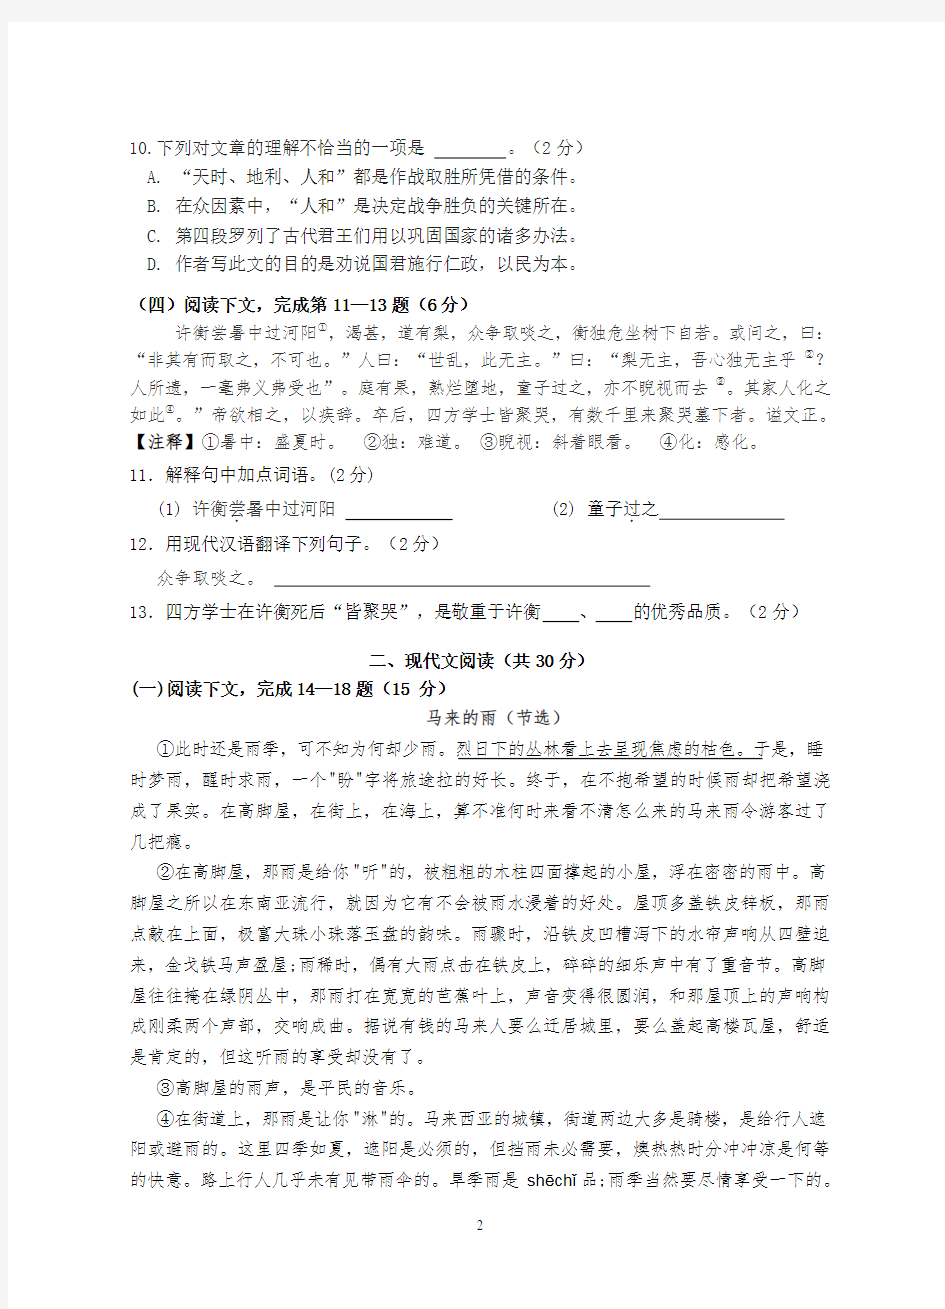 (完整版)上海市2016学年第二学期期末考试六年级语文试卷(含答题纸和答案)